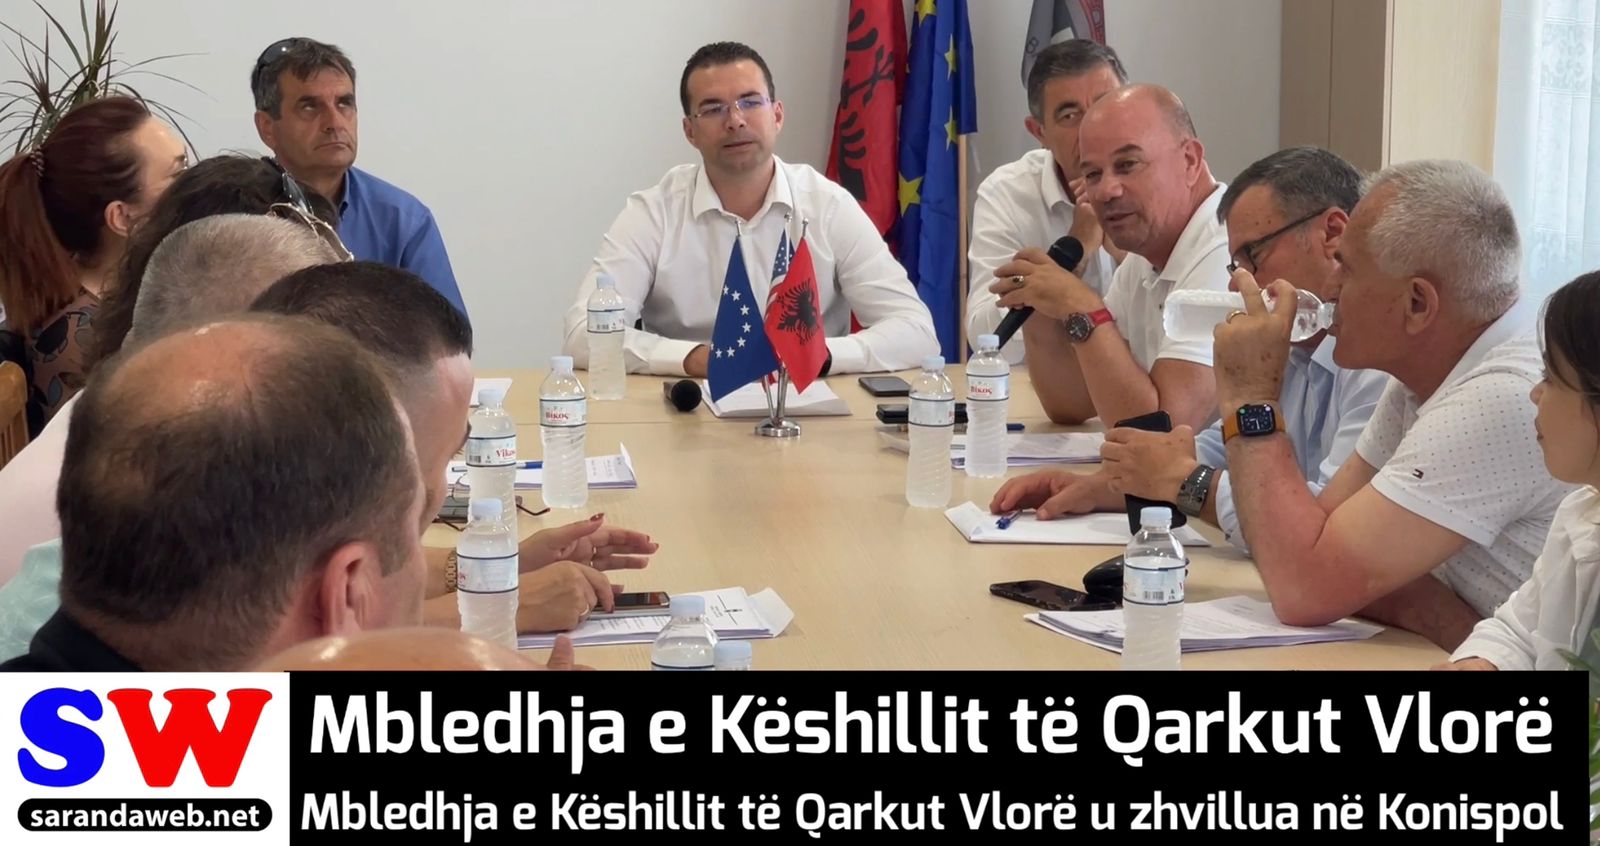 Mbledhja e Këshillit të Qarkut Vlorë, zhvilluar në Konispol, 9 Qershor 2022